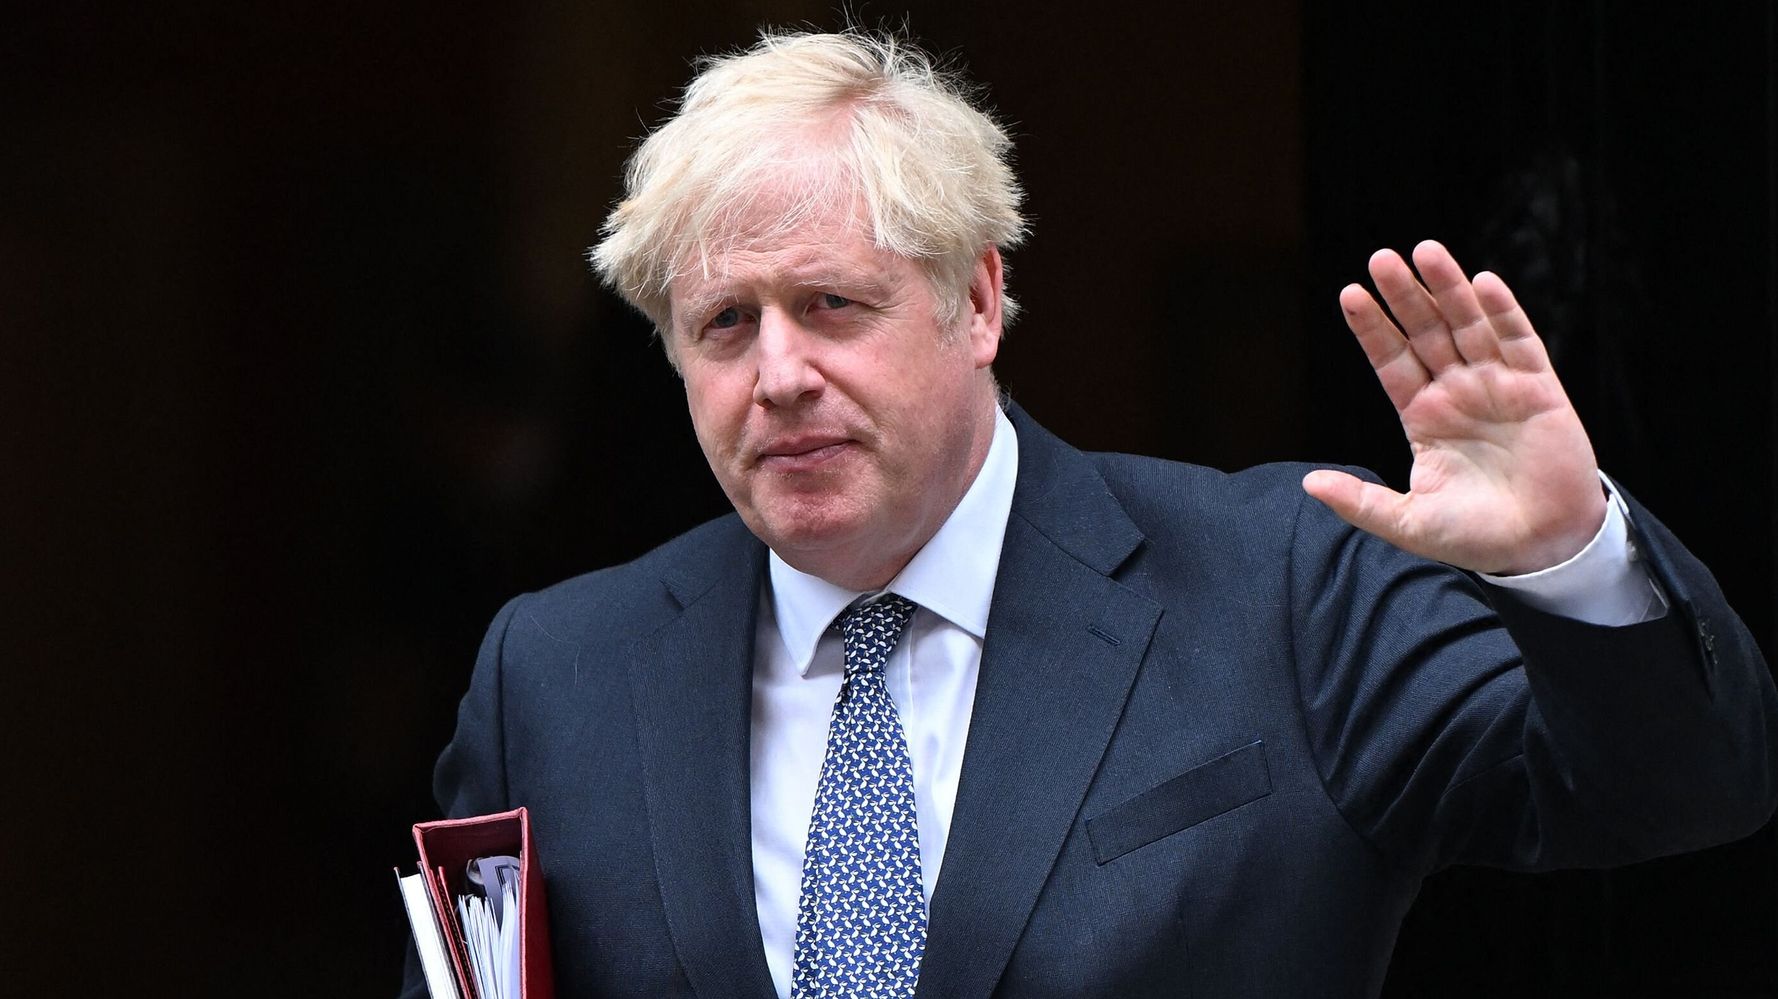 2 ministres clés du cabinet britannique démissionnent alors que le gouvernement de Boris Johnson vacille